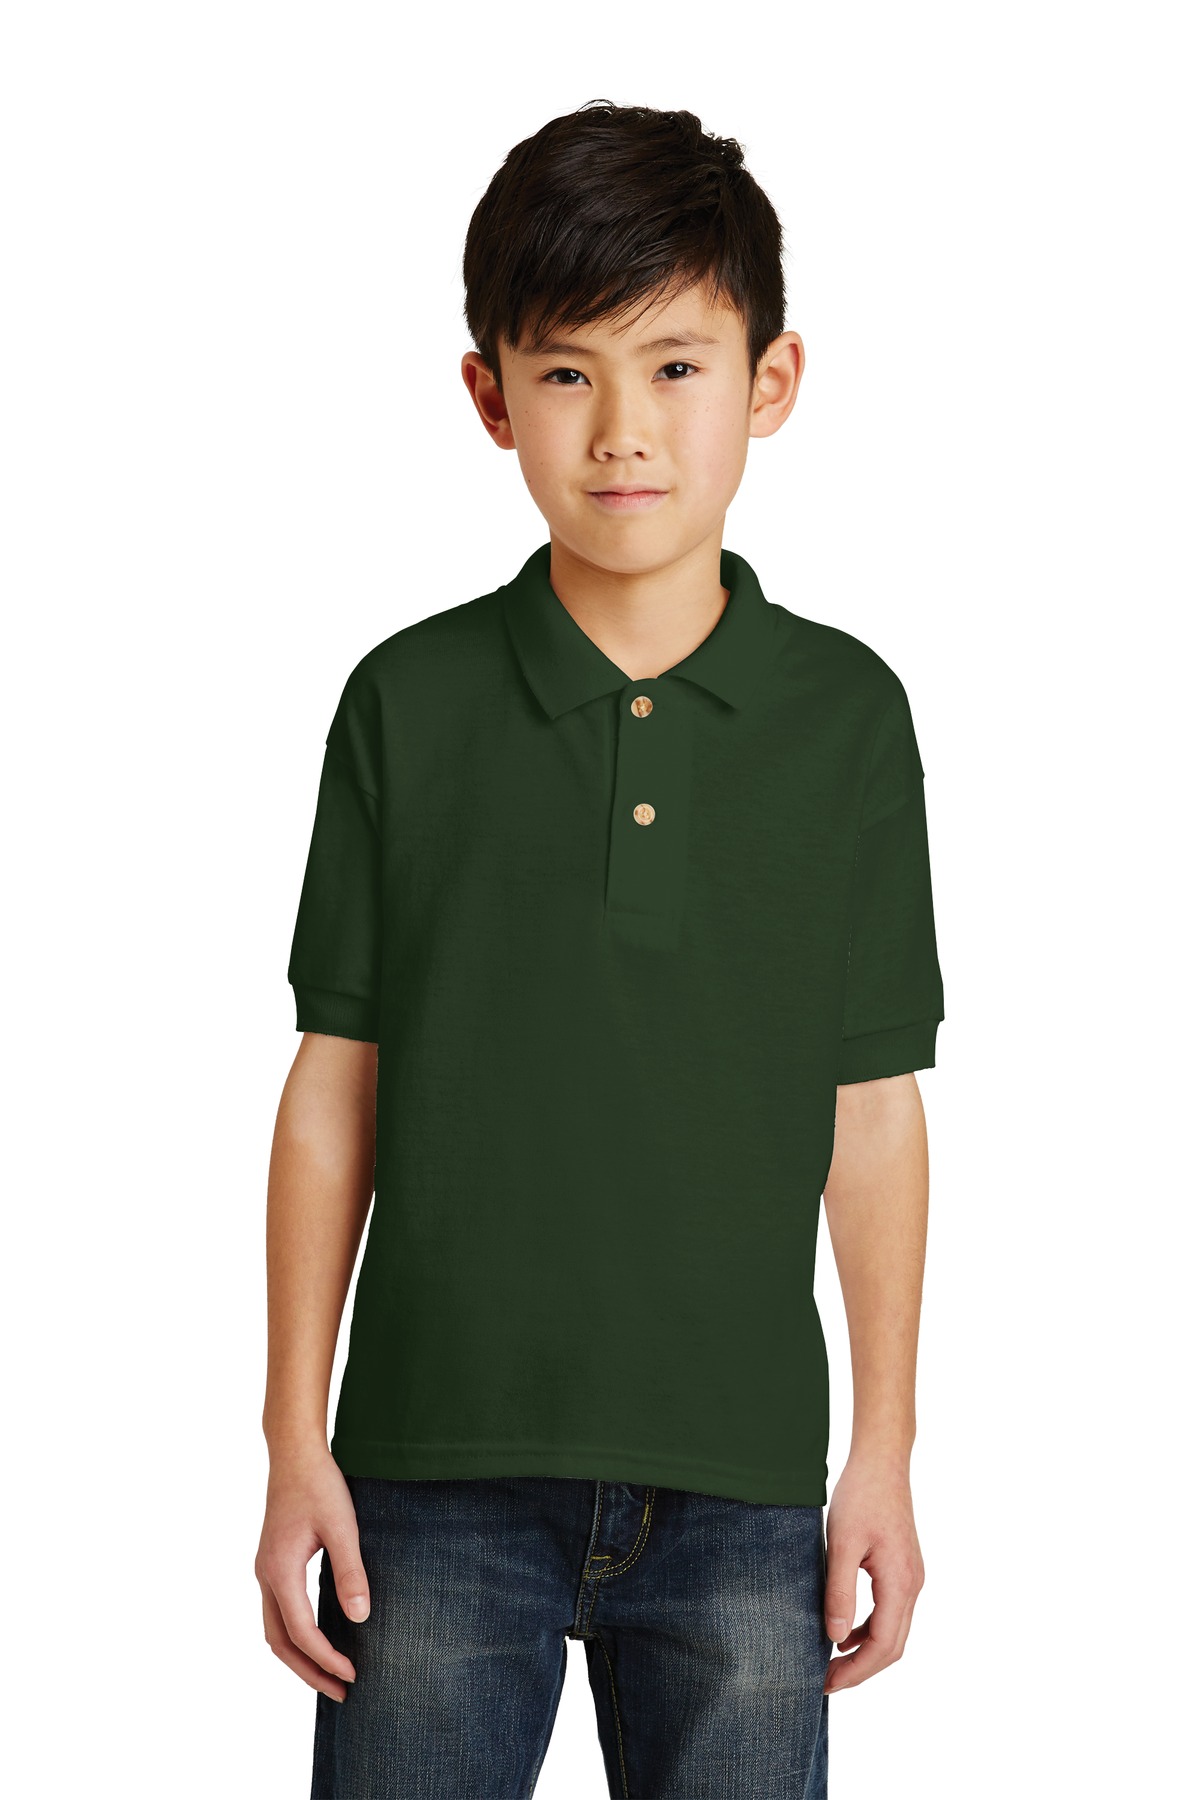 Gildan Youth DryBlend 6-Ounce Jersey Knit Sport Shirt. 8800B